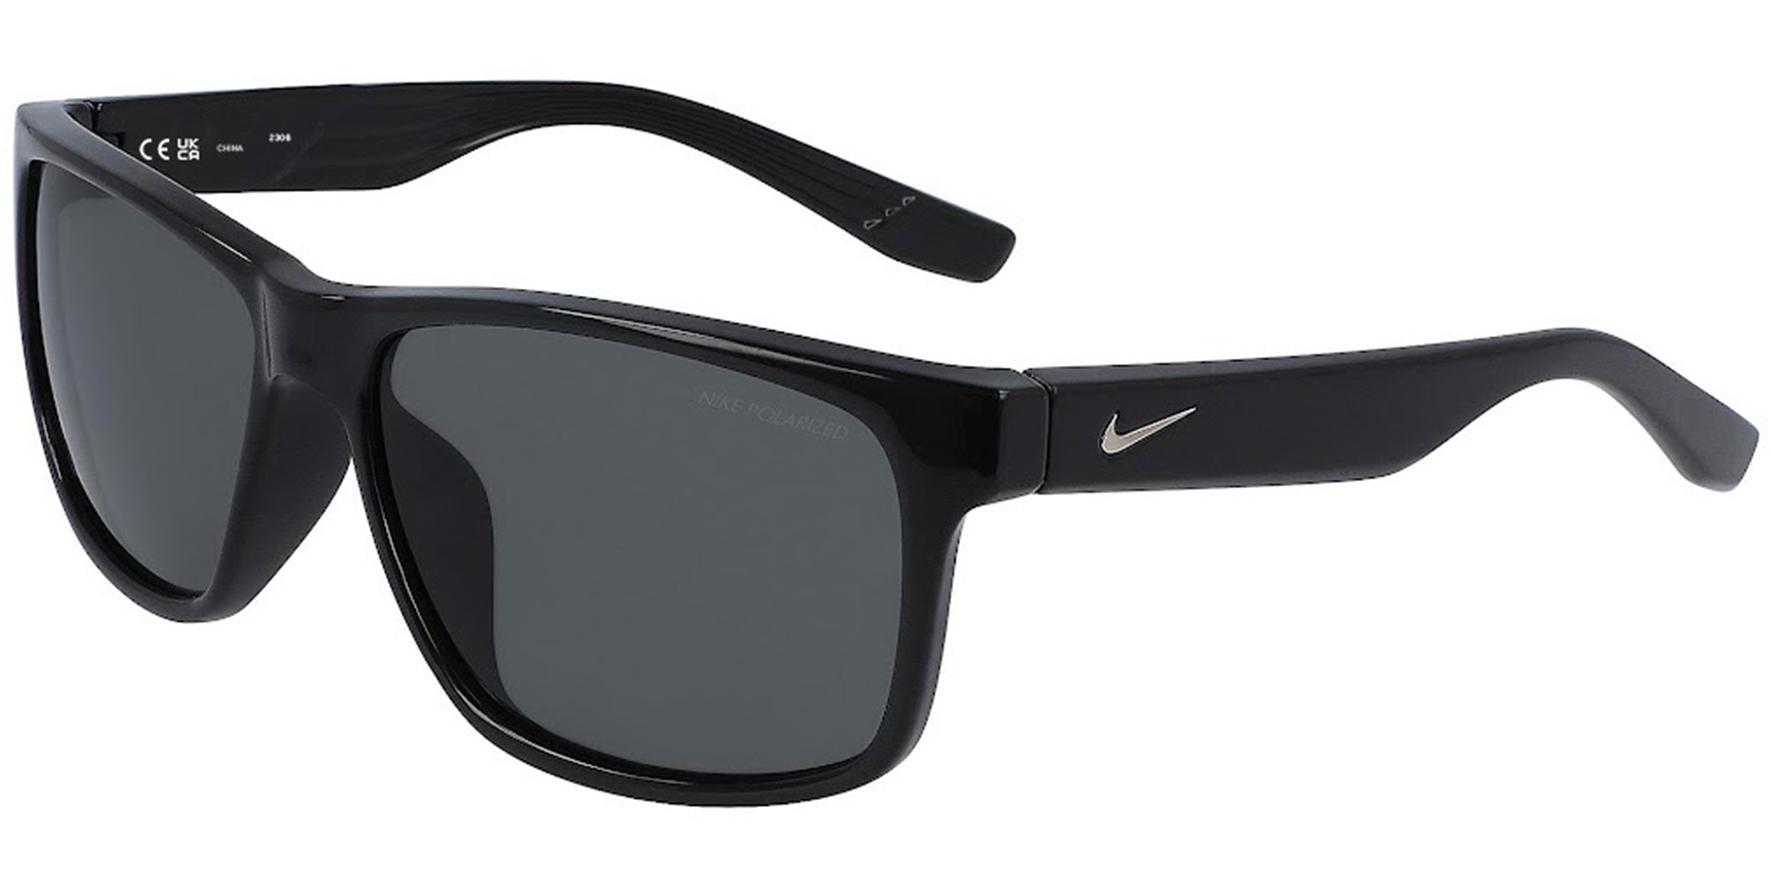 Nike Cruiser P Polarized Shiny Black Square Sport Sunglasses for $29 Shipped